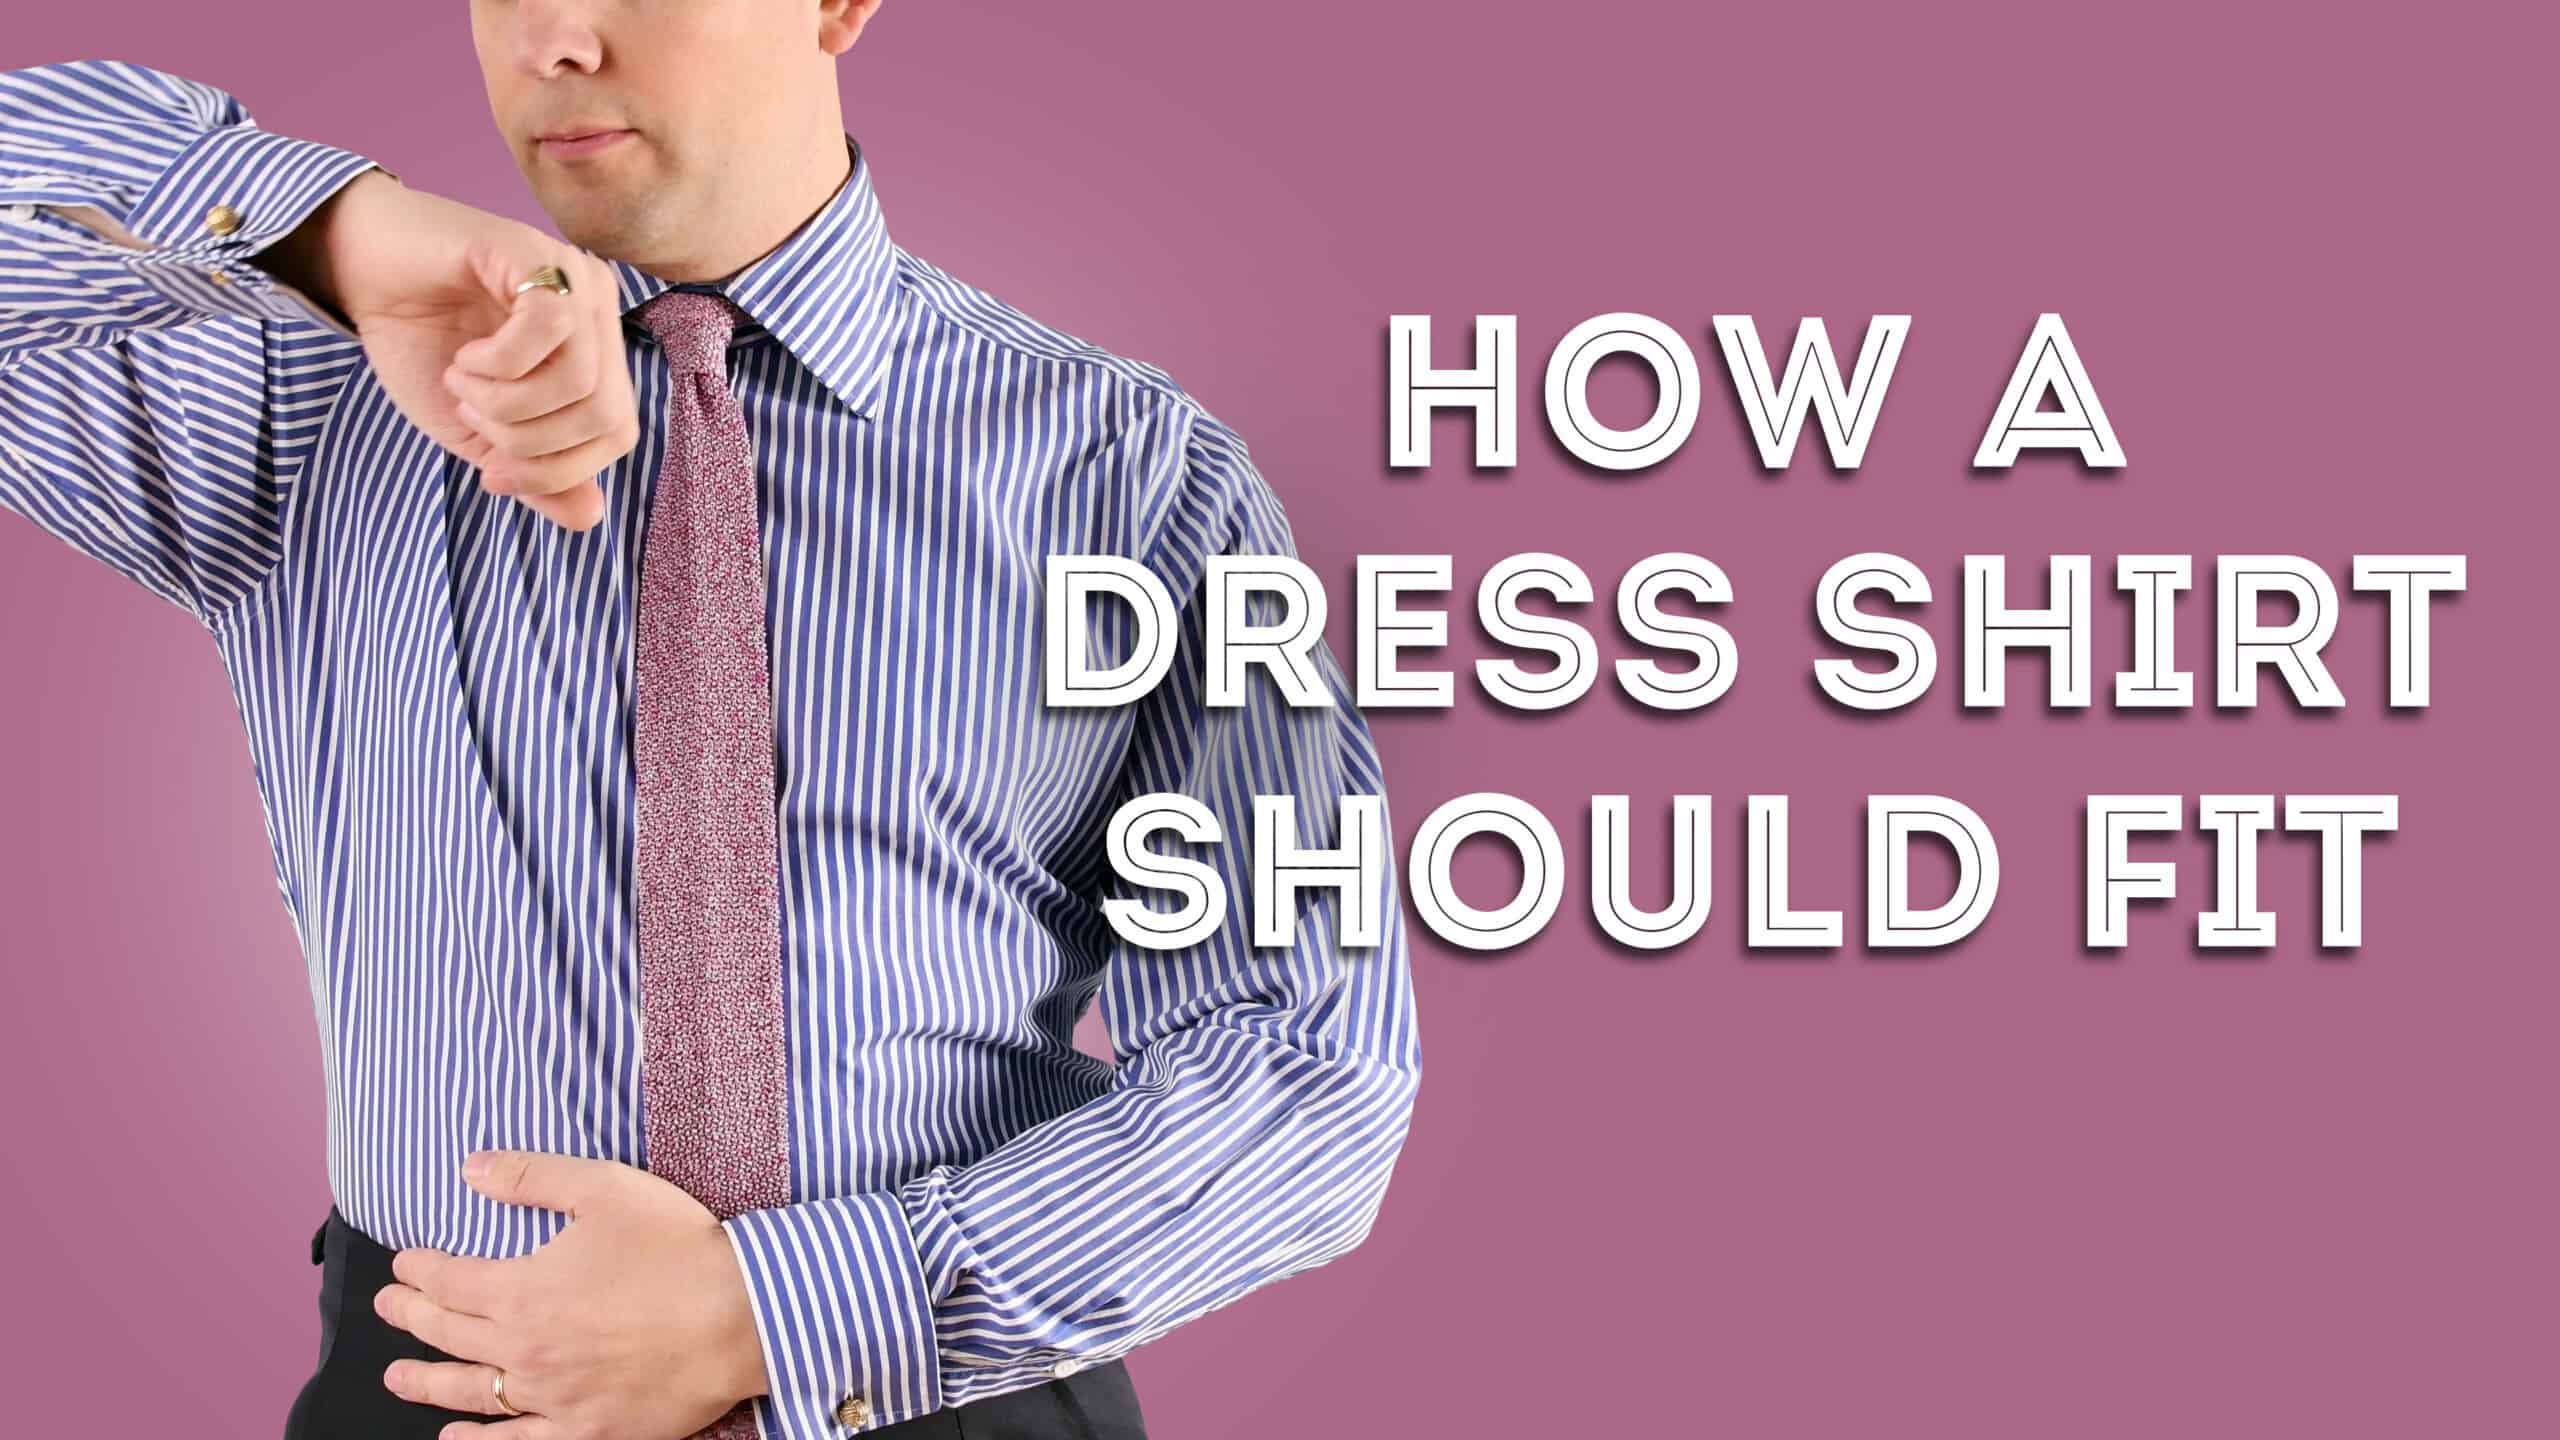 How A Dress Shirt Should Fit - Proper ...